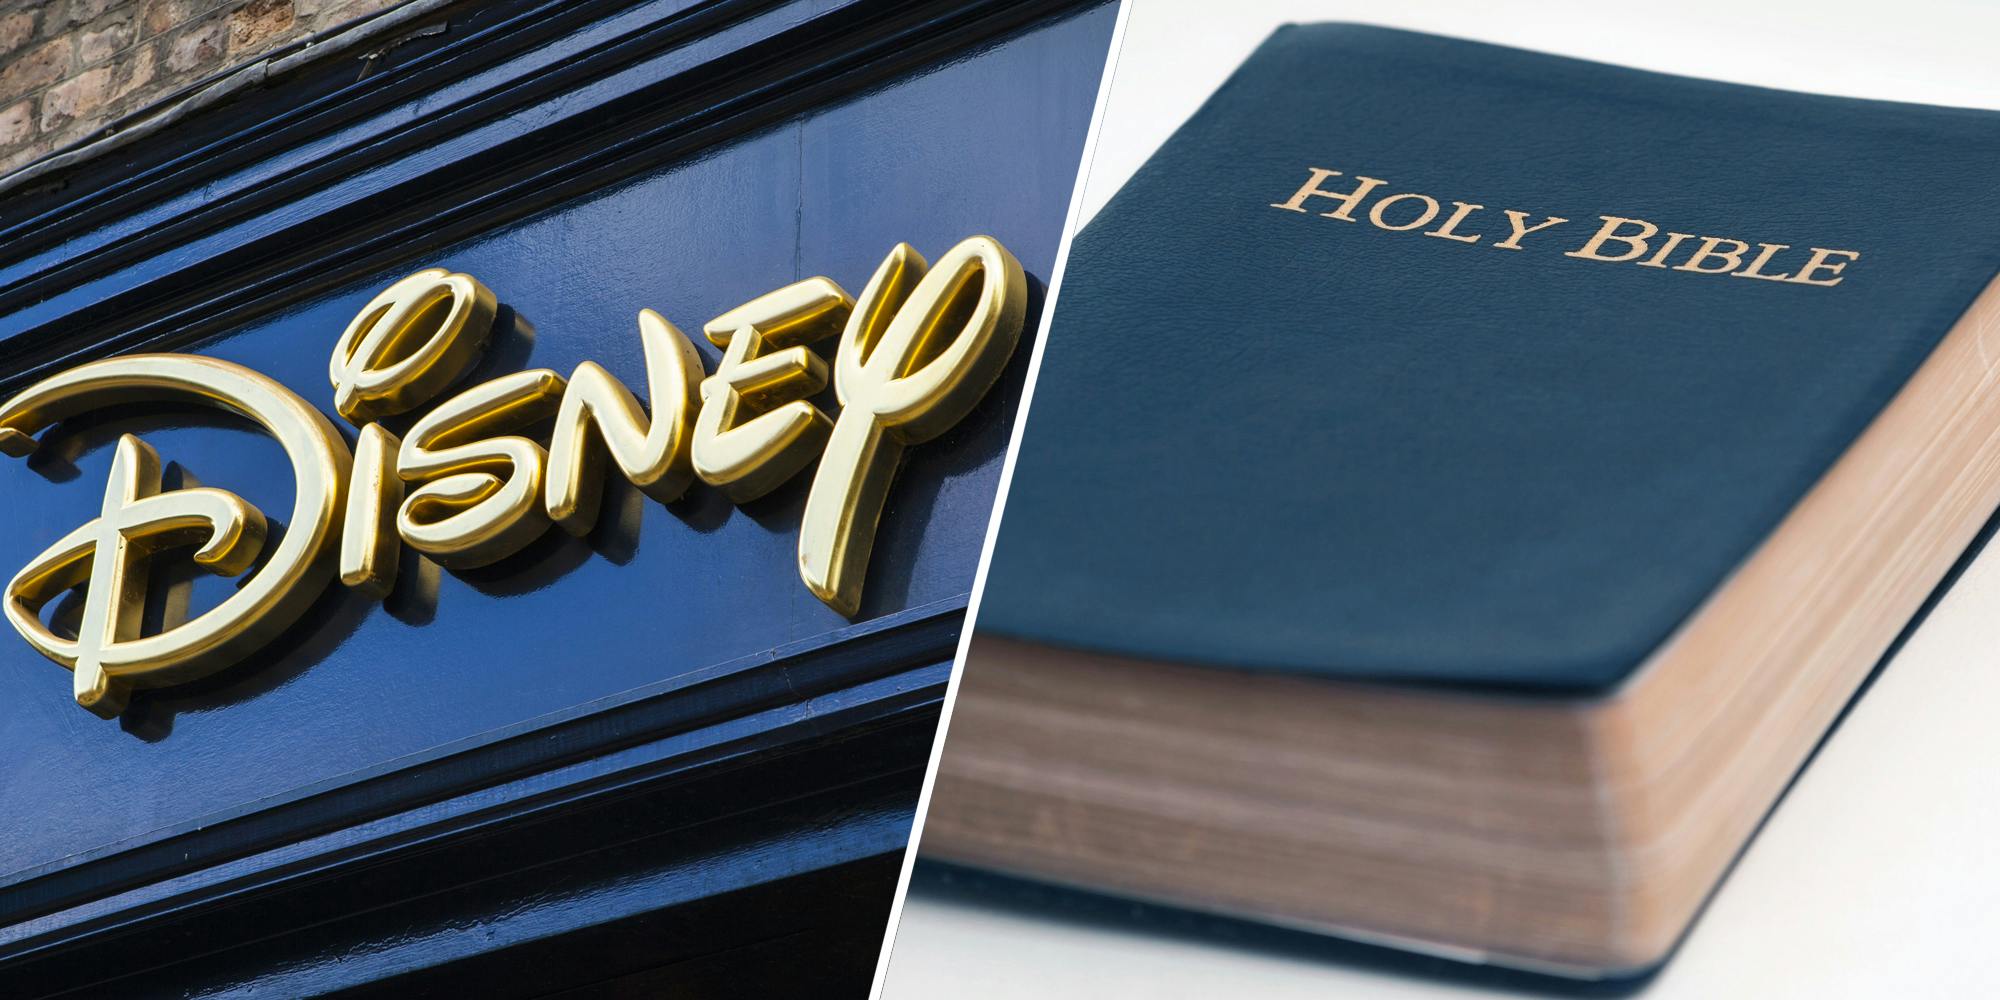 Disney logo(l), Bible(r)